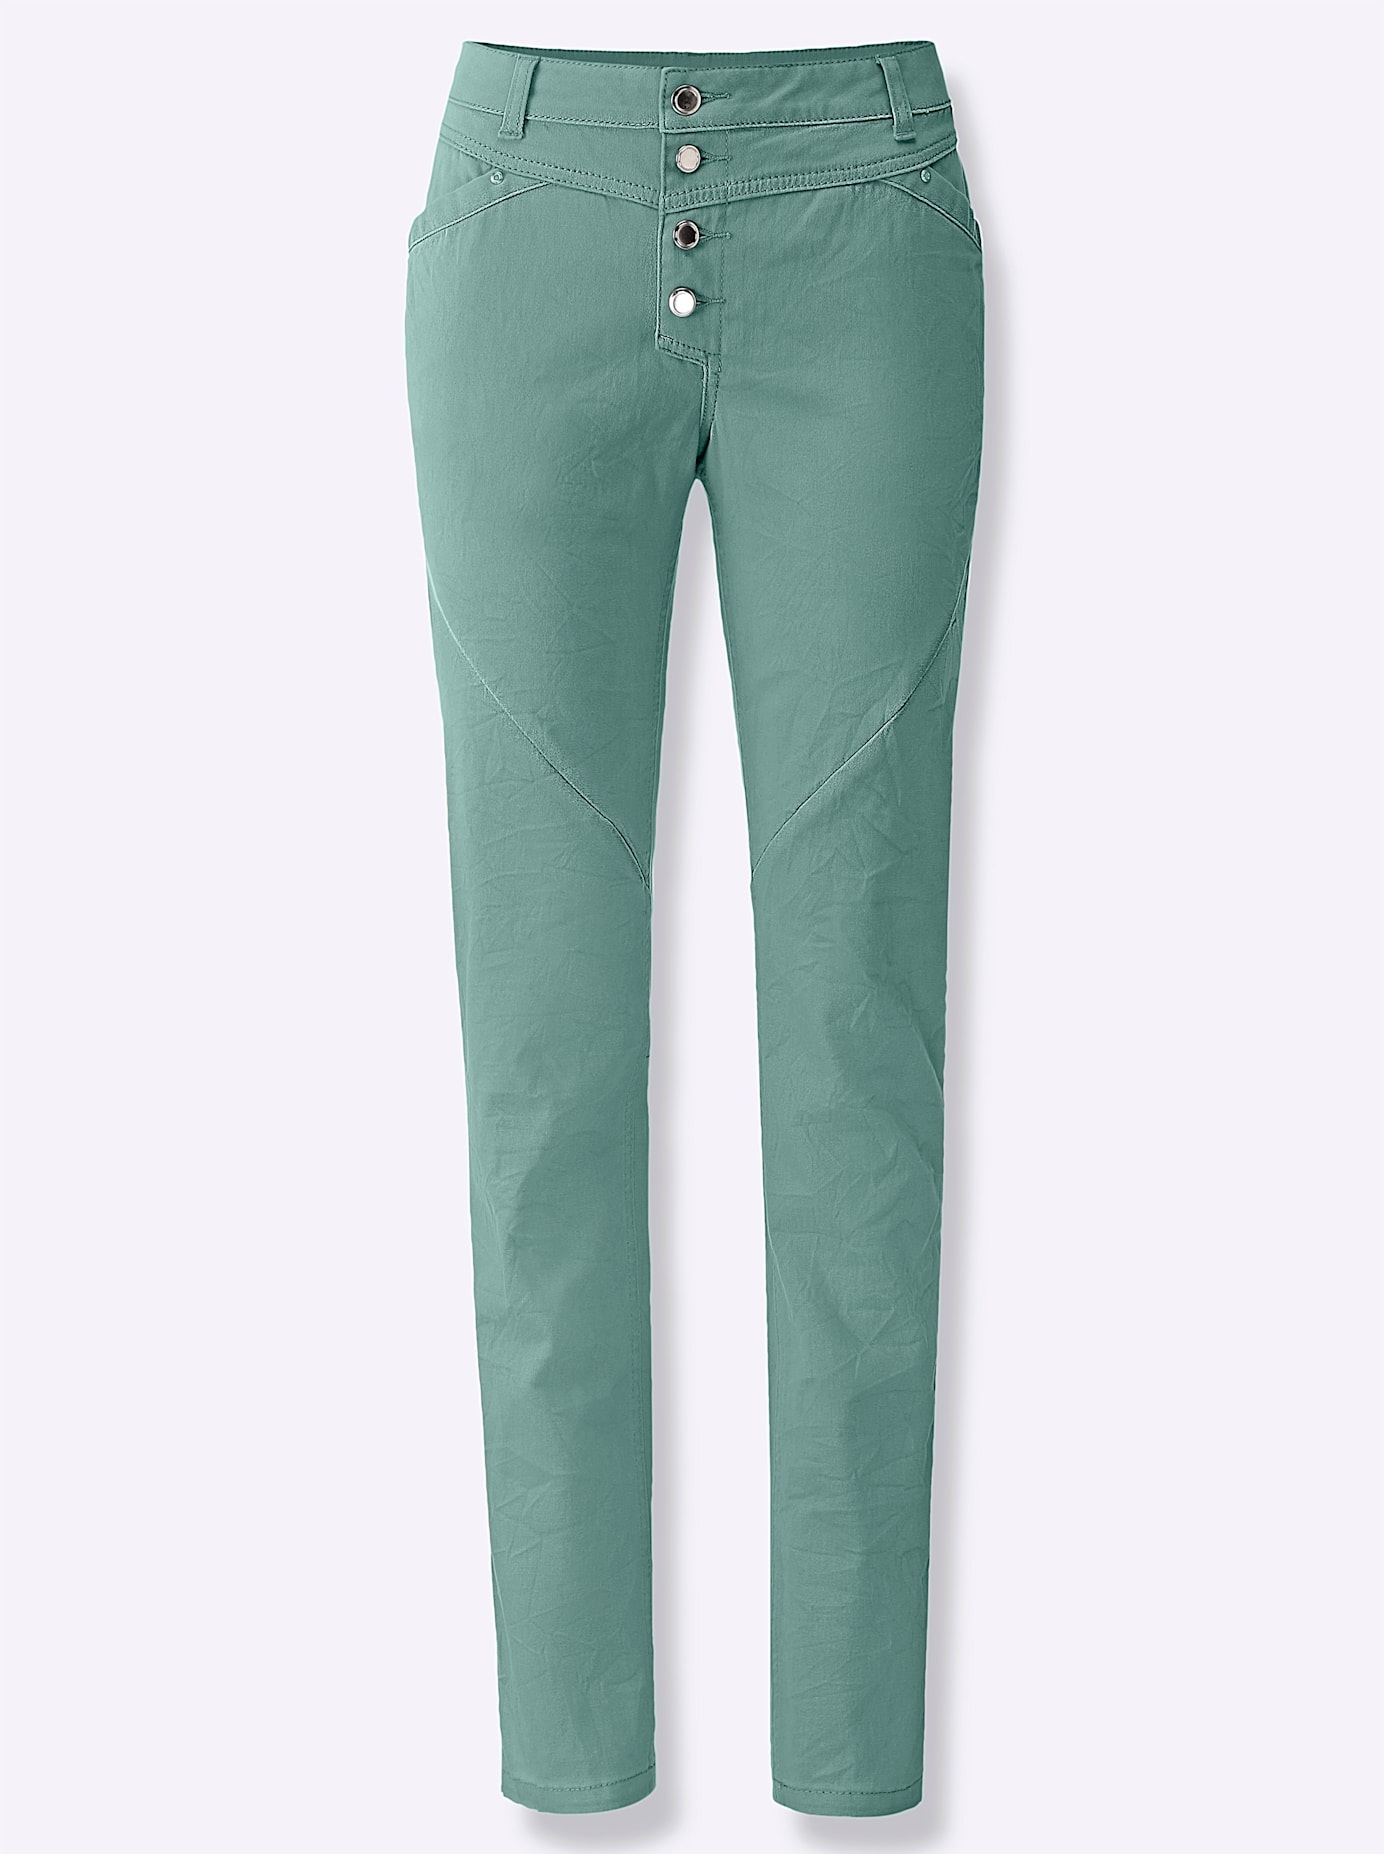 Inspirationen Bequeme CHF Jeans, versandkostenfrei bestellen 99 (1 tlg.) ab